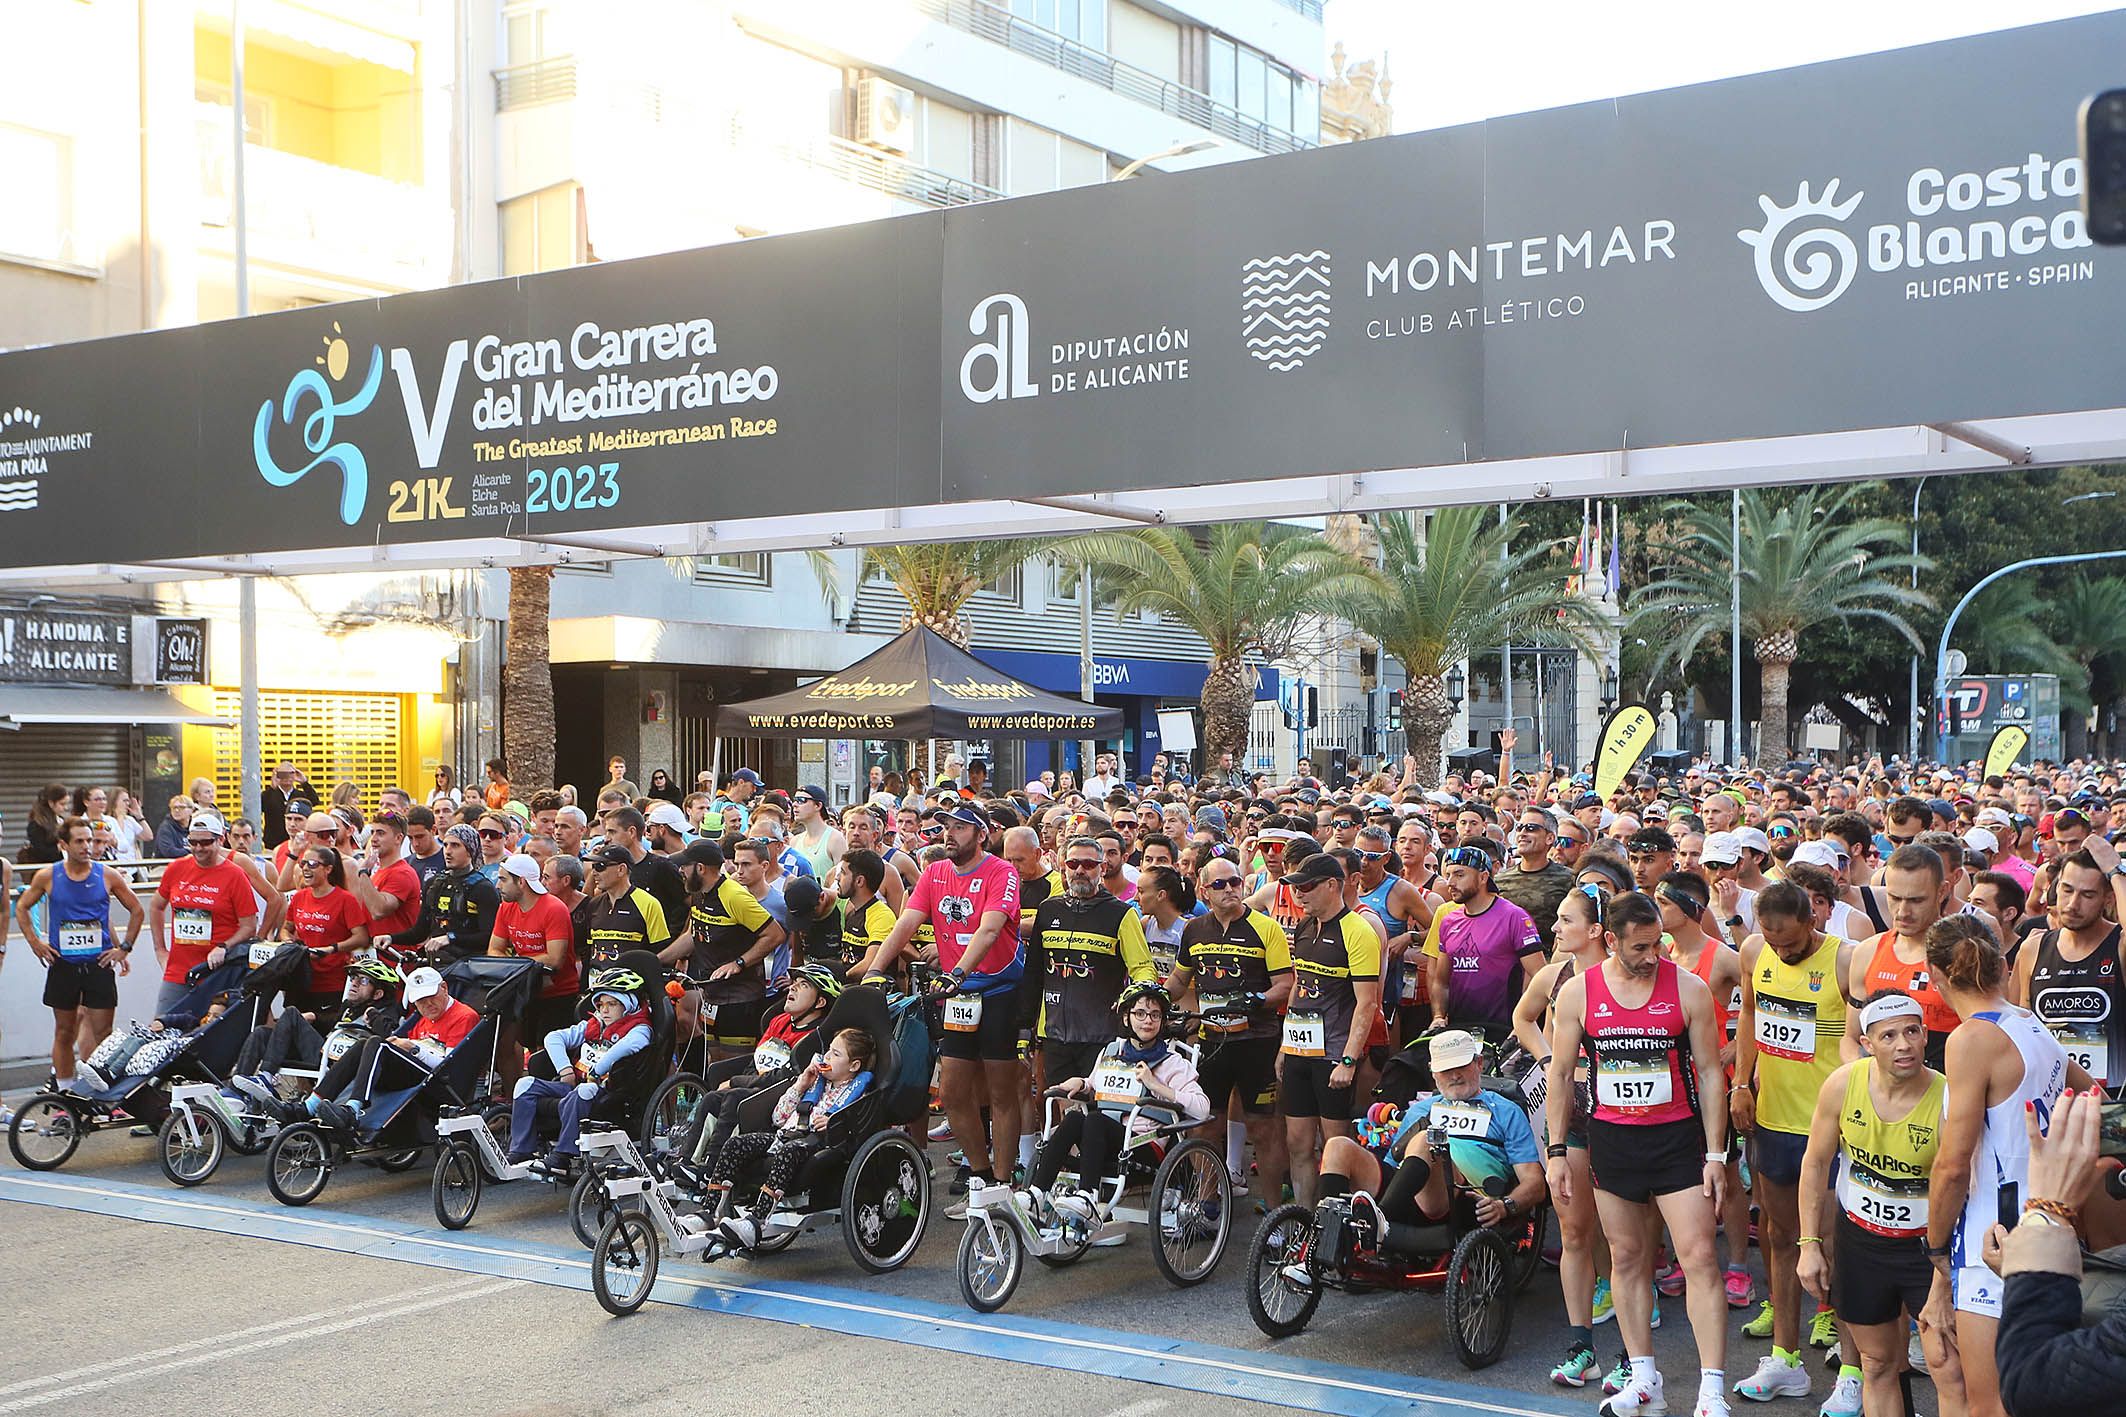 Éxito rotundo: Más de 3.000 corredores conquistan la ‘V Gran Carrera del Mediterráneo – 21K’ en Alicante